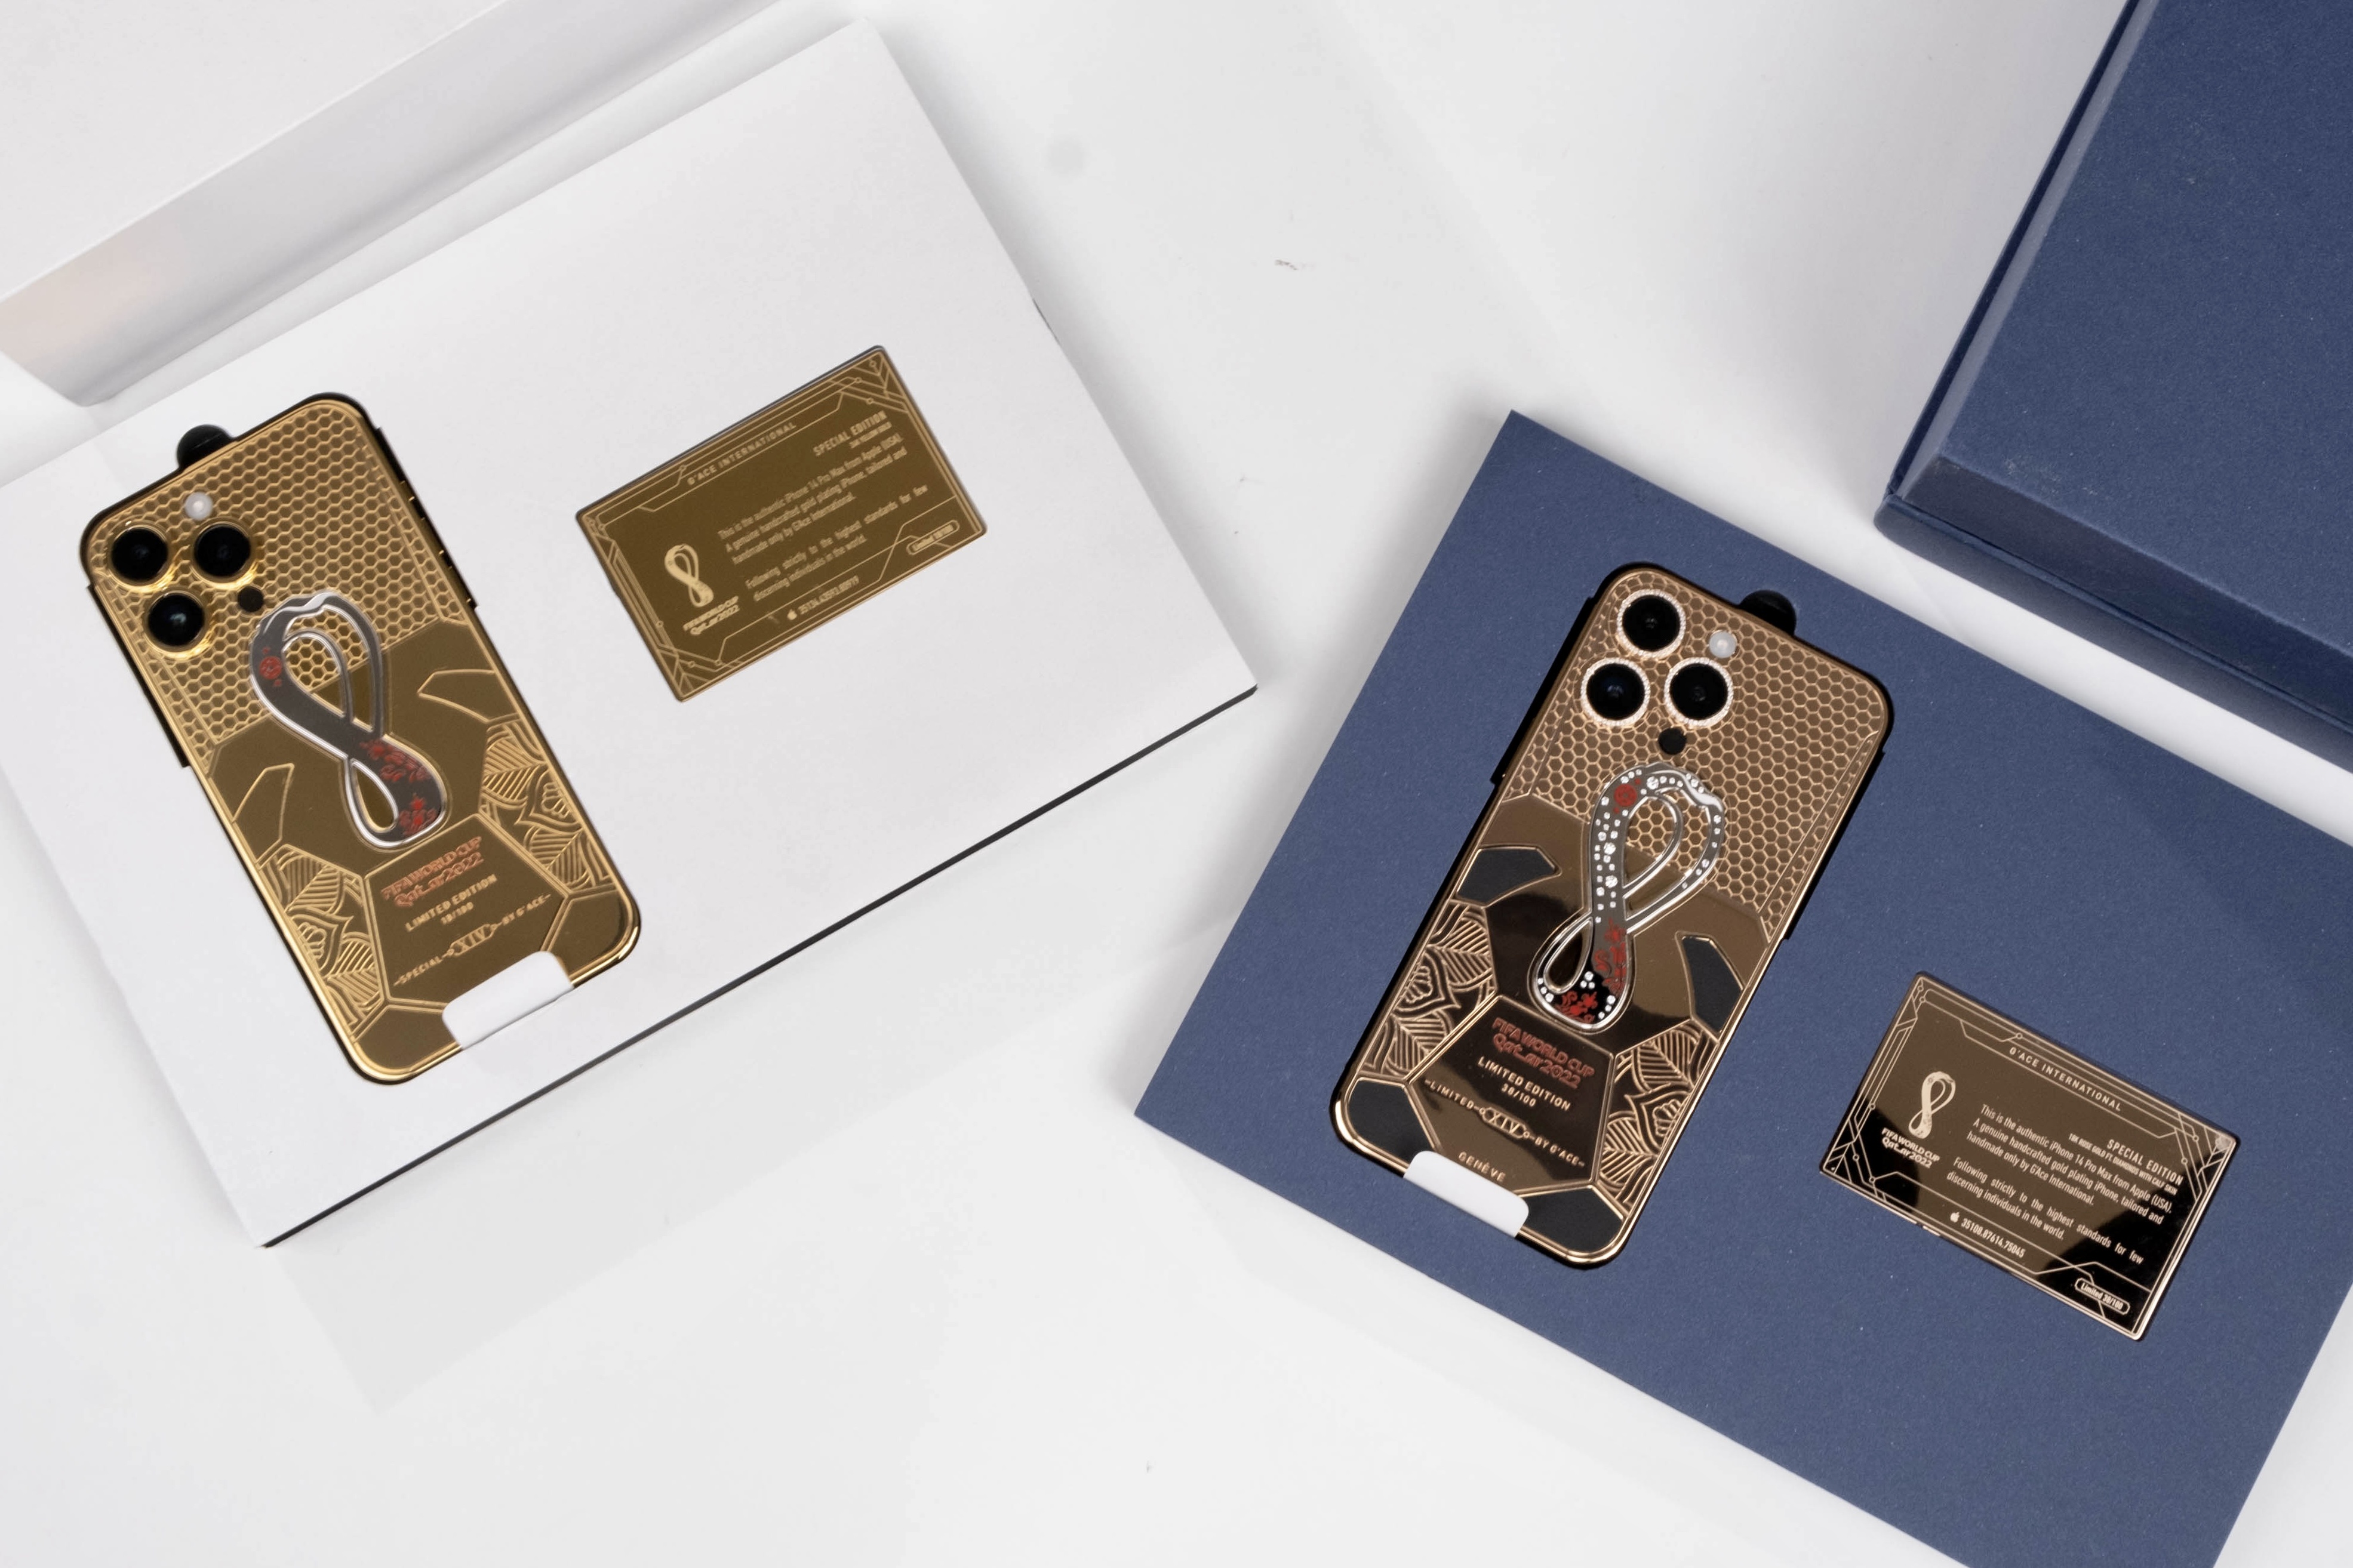 iPhone 14 mạ vàng phiên bản World Cup 2022 giá 227 triệu đồng - ảnh 1